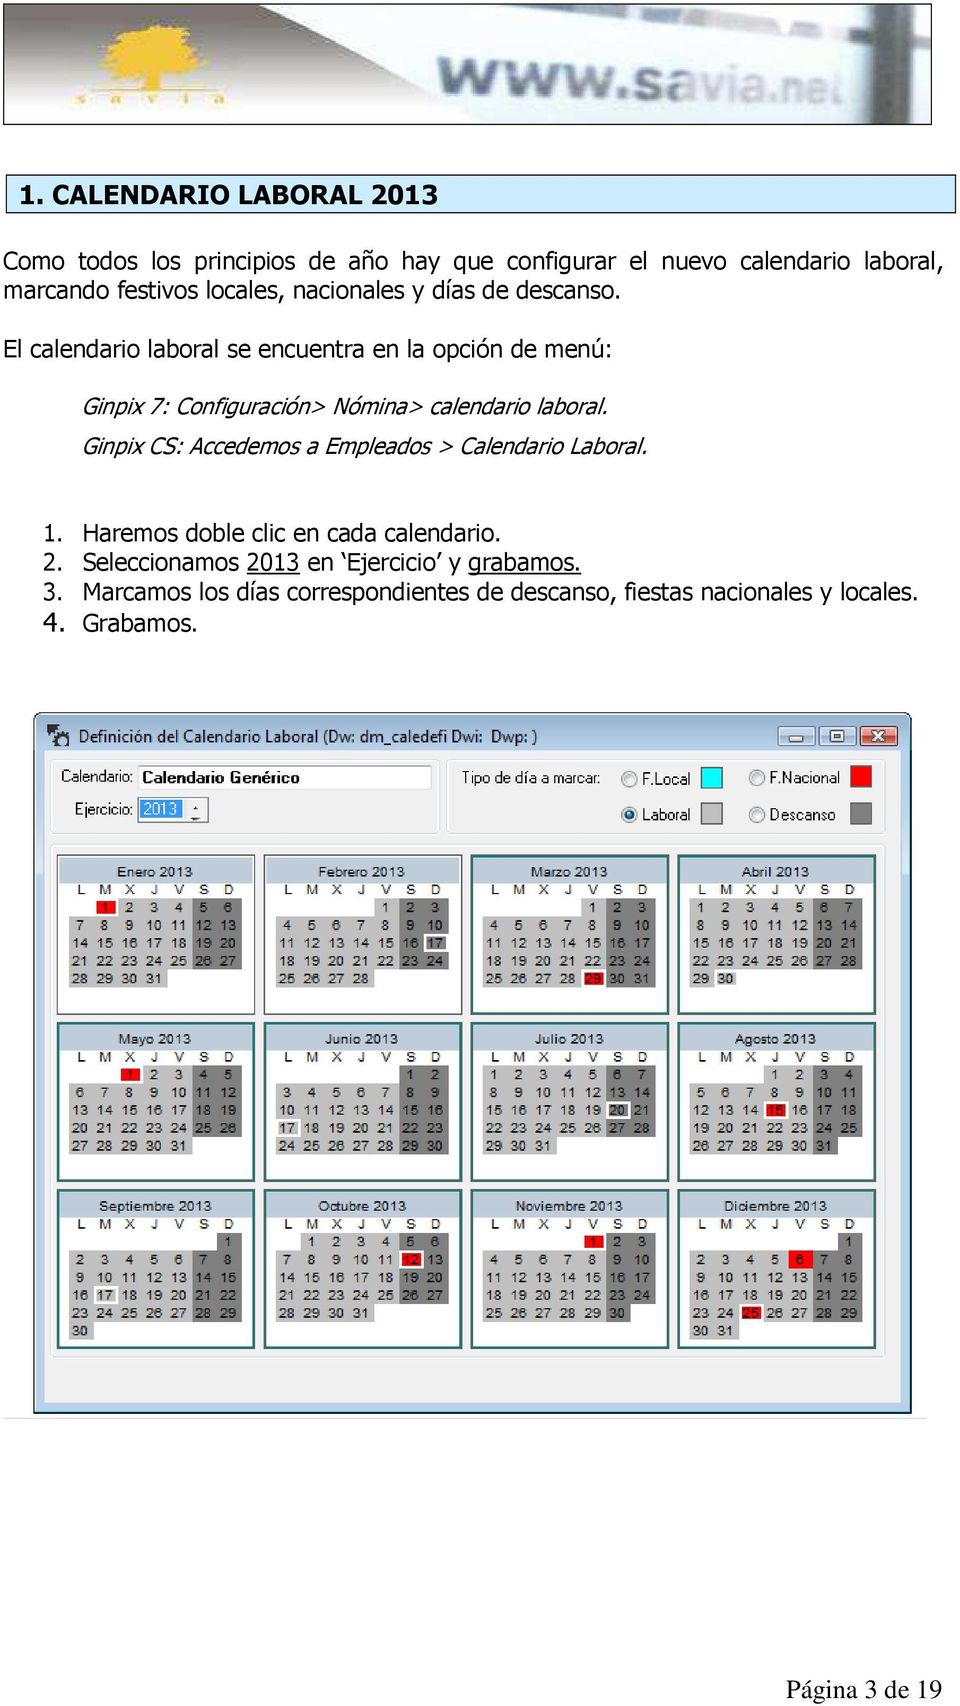 El calendario laboral se encuentra en la opción de menú: Ginpix 7: Configuración> Nómina> calendario laboral.